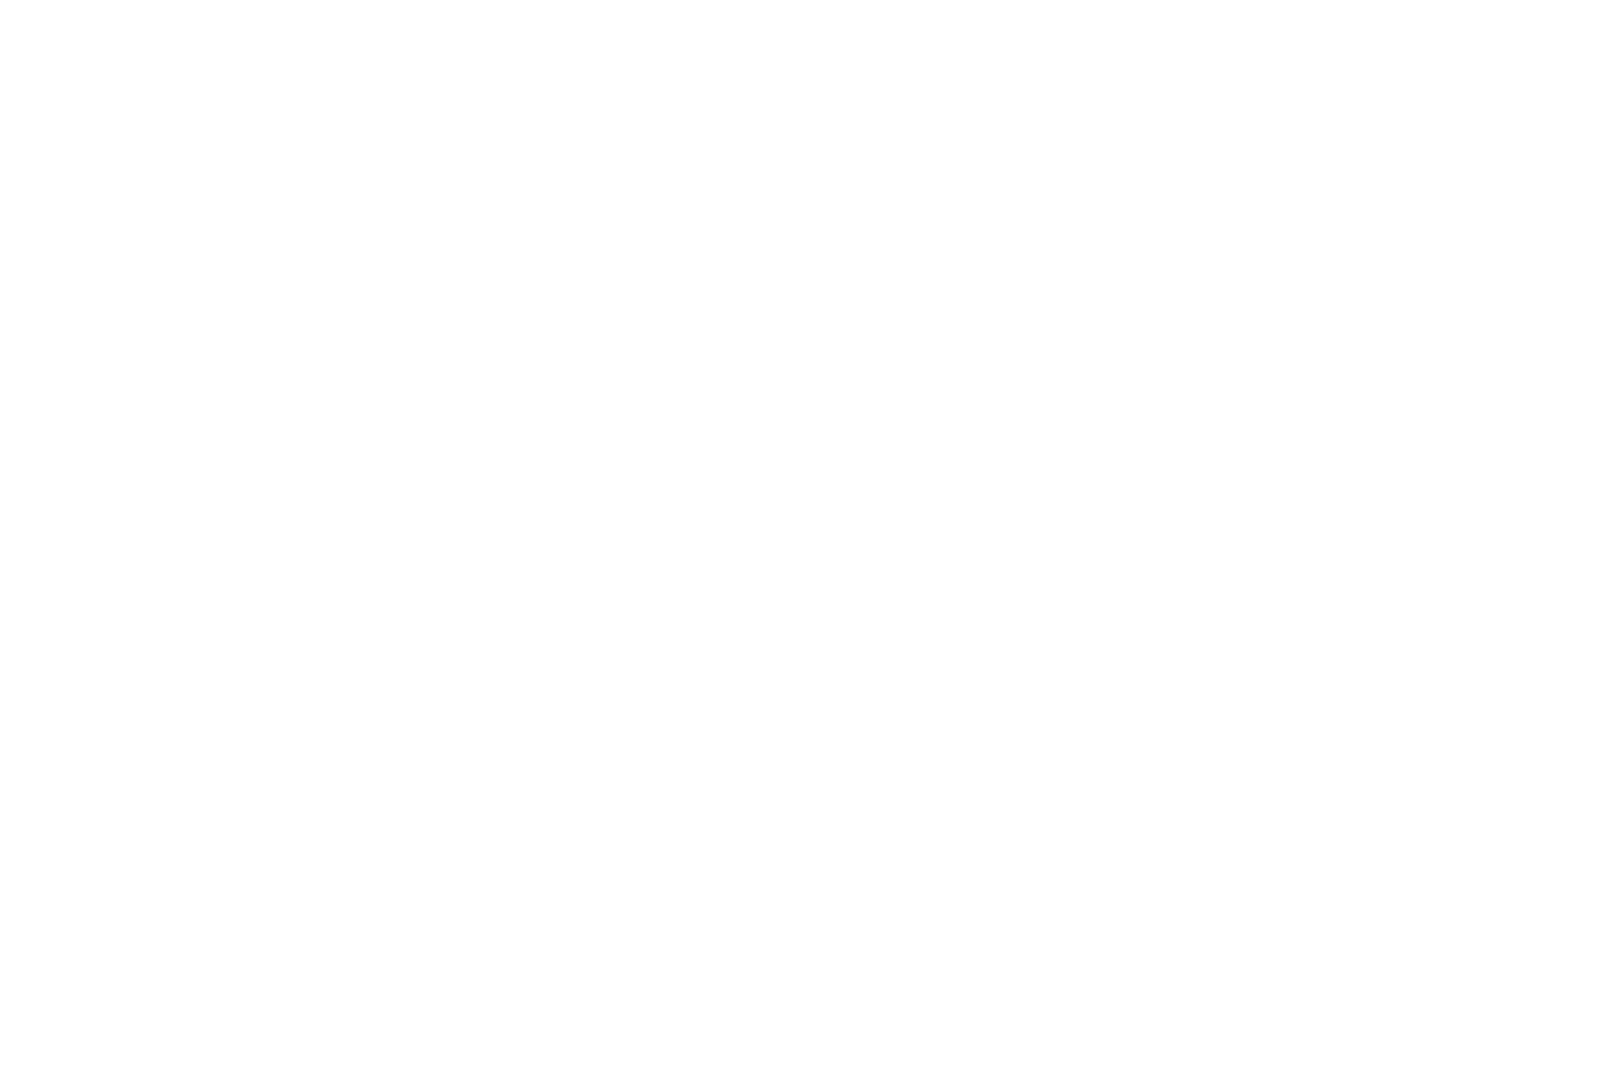 YWCA Regina